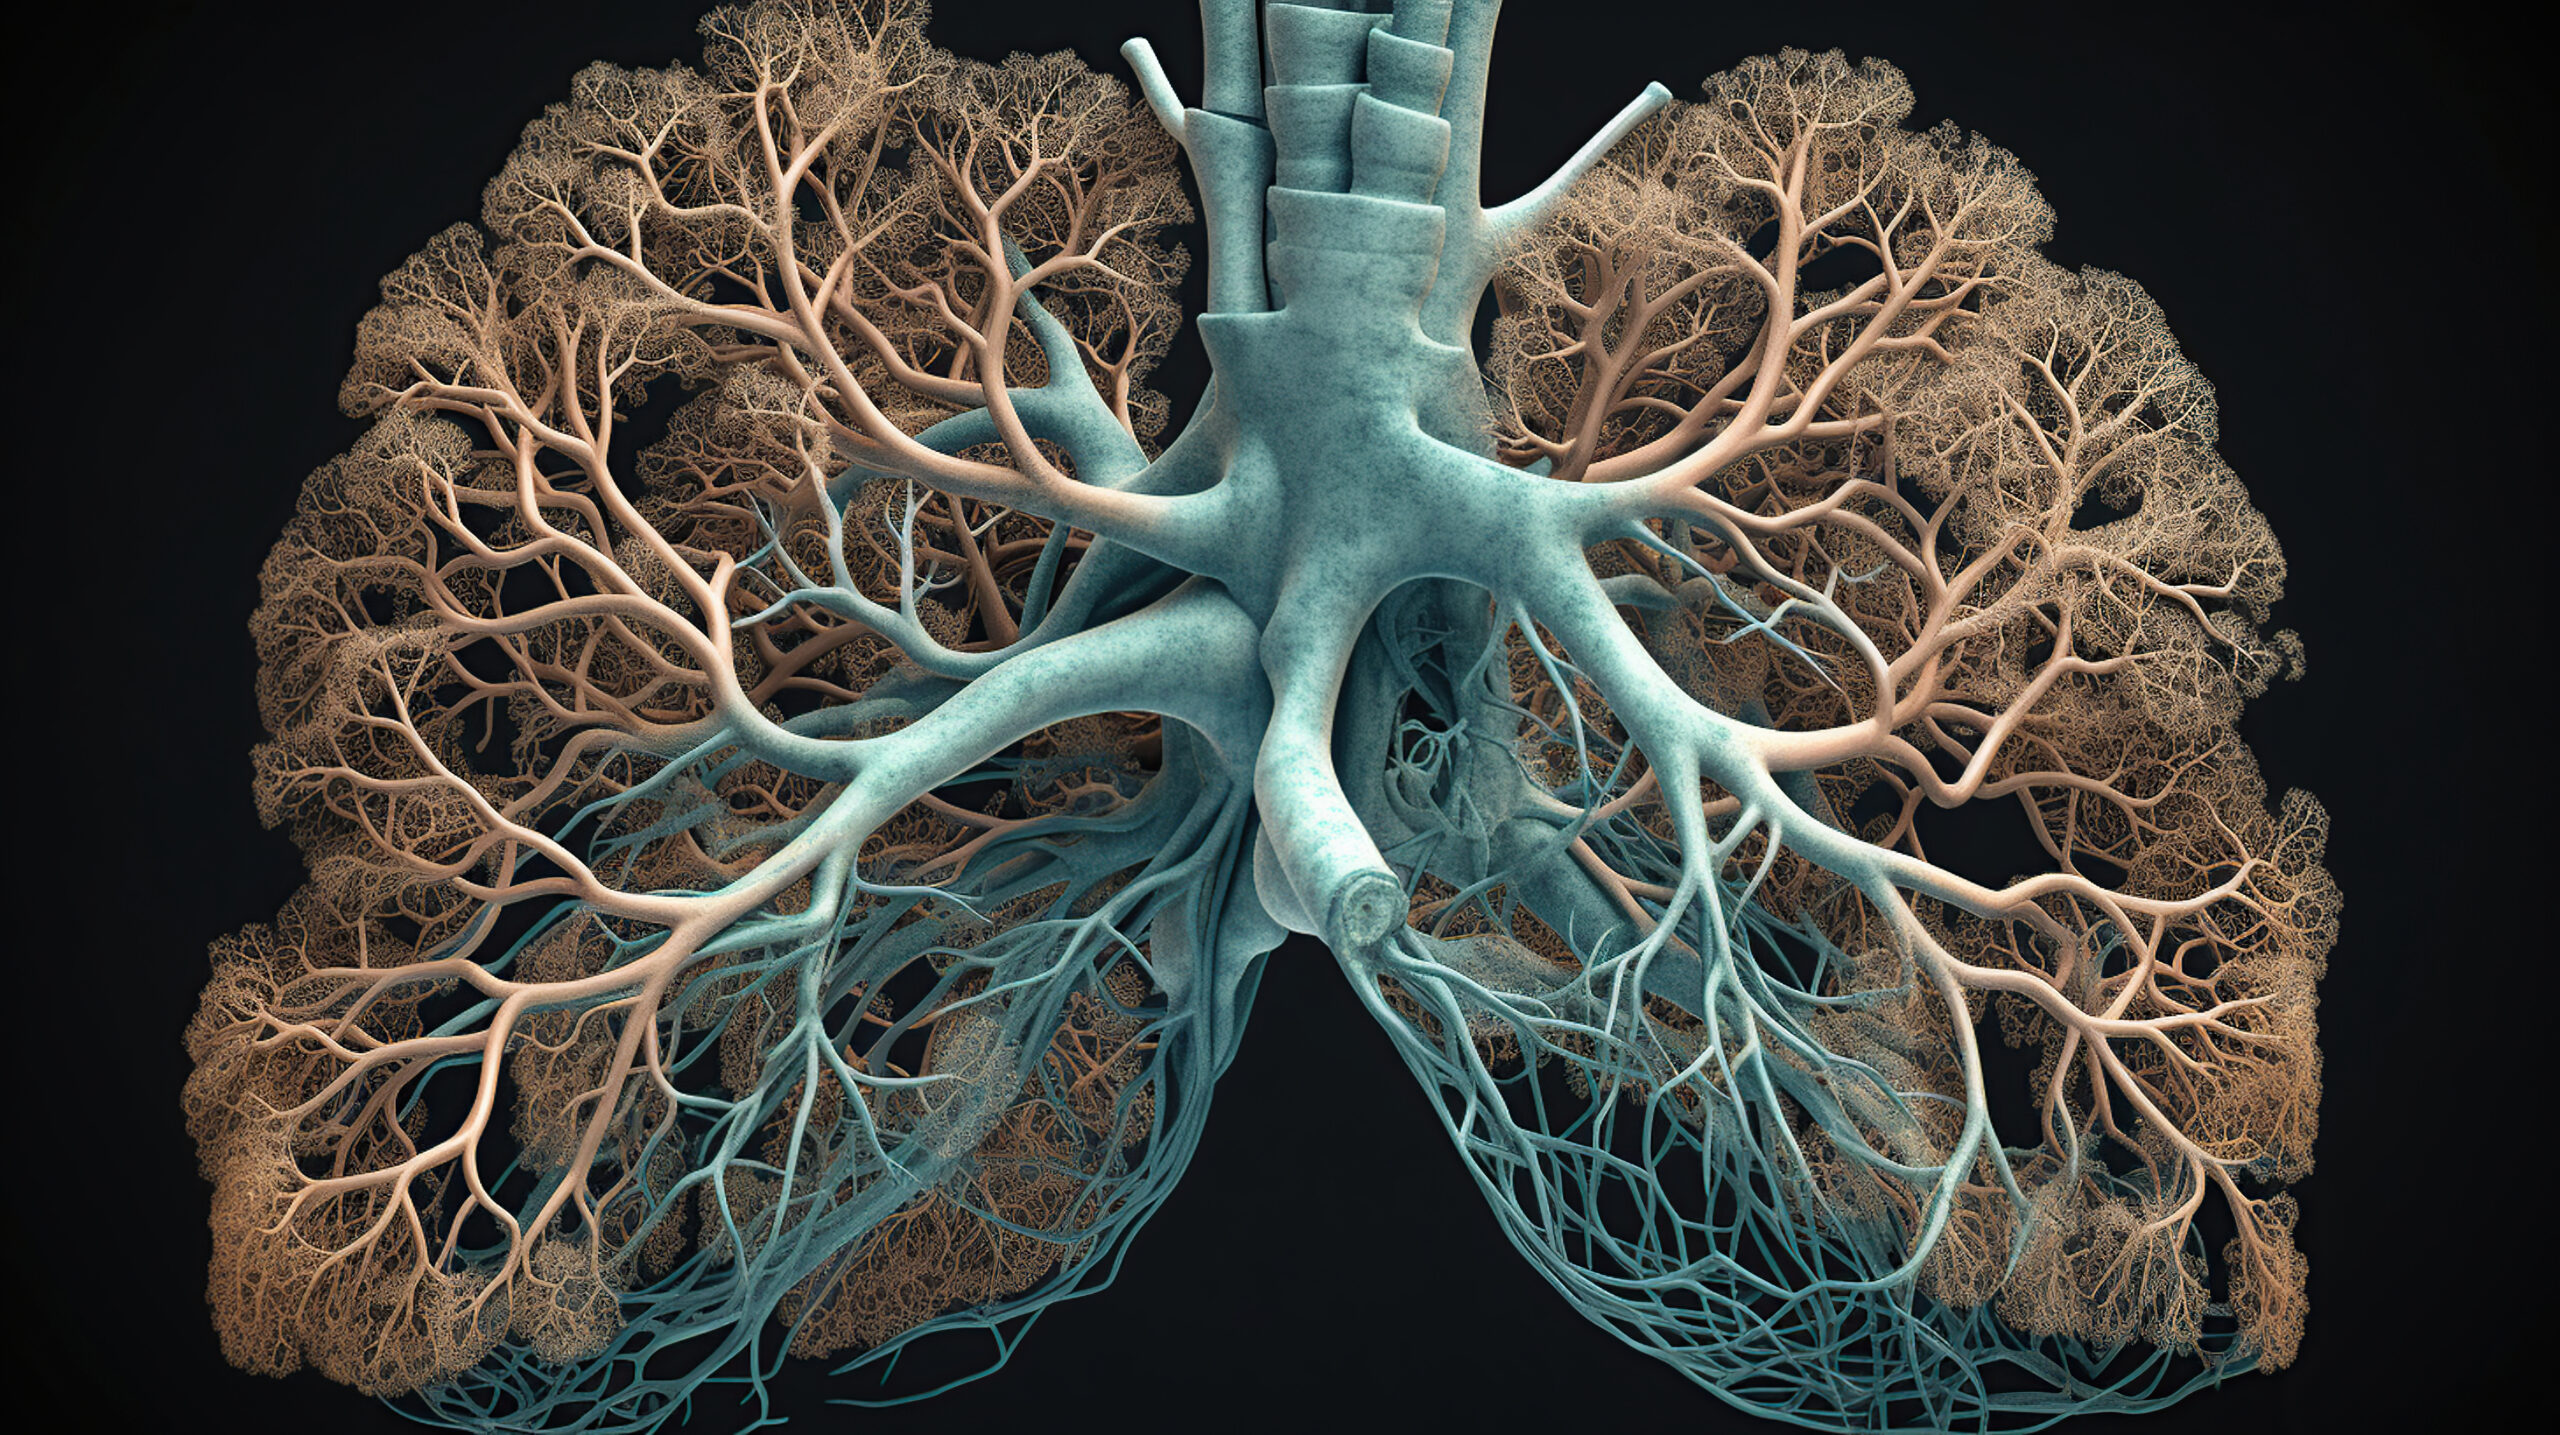 Na przedstawionej grafice układ oddechowy z płucami jest w pełnym wyglądzie. Płyny i struktury anatomiczne są jasno zaznaczone, ukazując drogi oddechowe, oskrzela i płuca. Kolorowa i szczegółowa ilustracja pomaga zrozumieć złożoną strukturę i funkcje układu oddechowego, dostarczając wizualnego wsparcia dla nauki i edukacji w dziedzinie anatomii i fizjologii oddechowej.